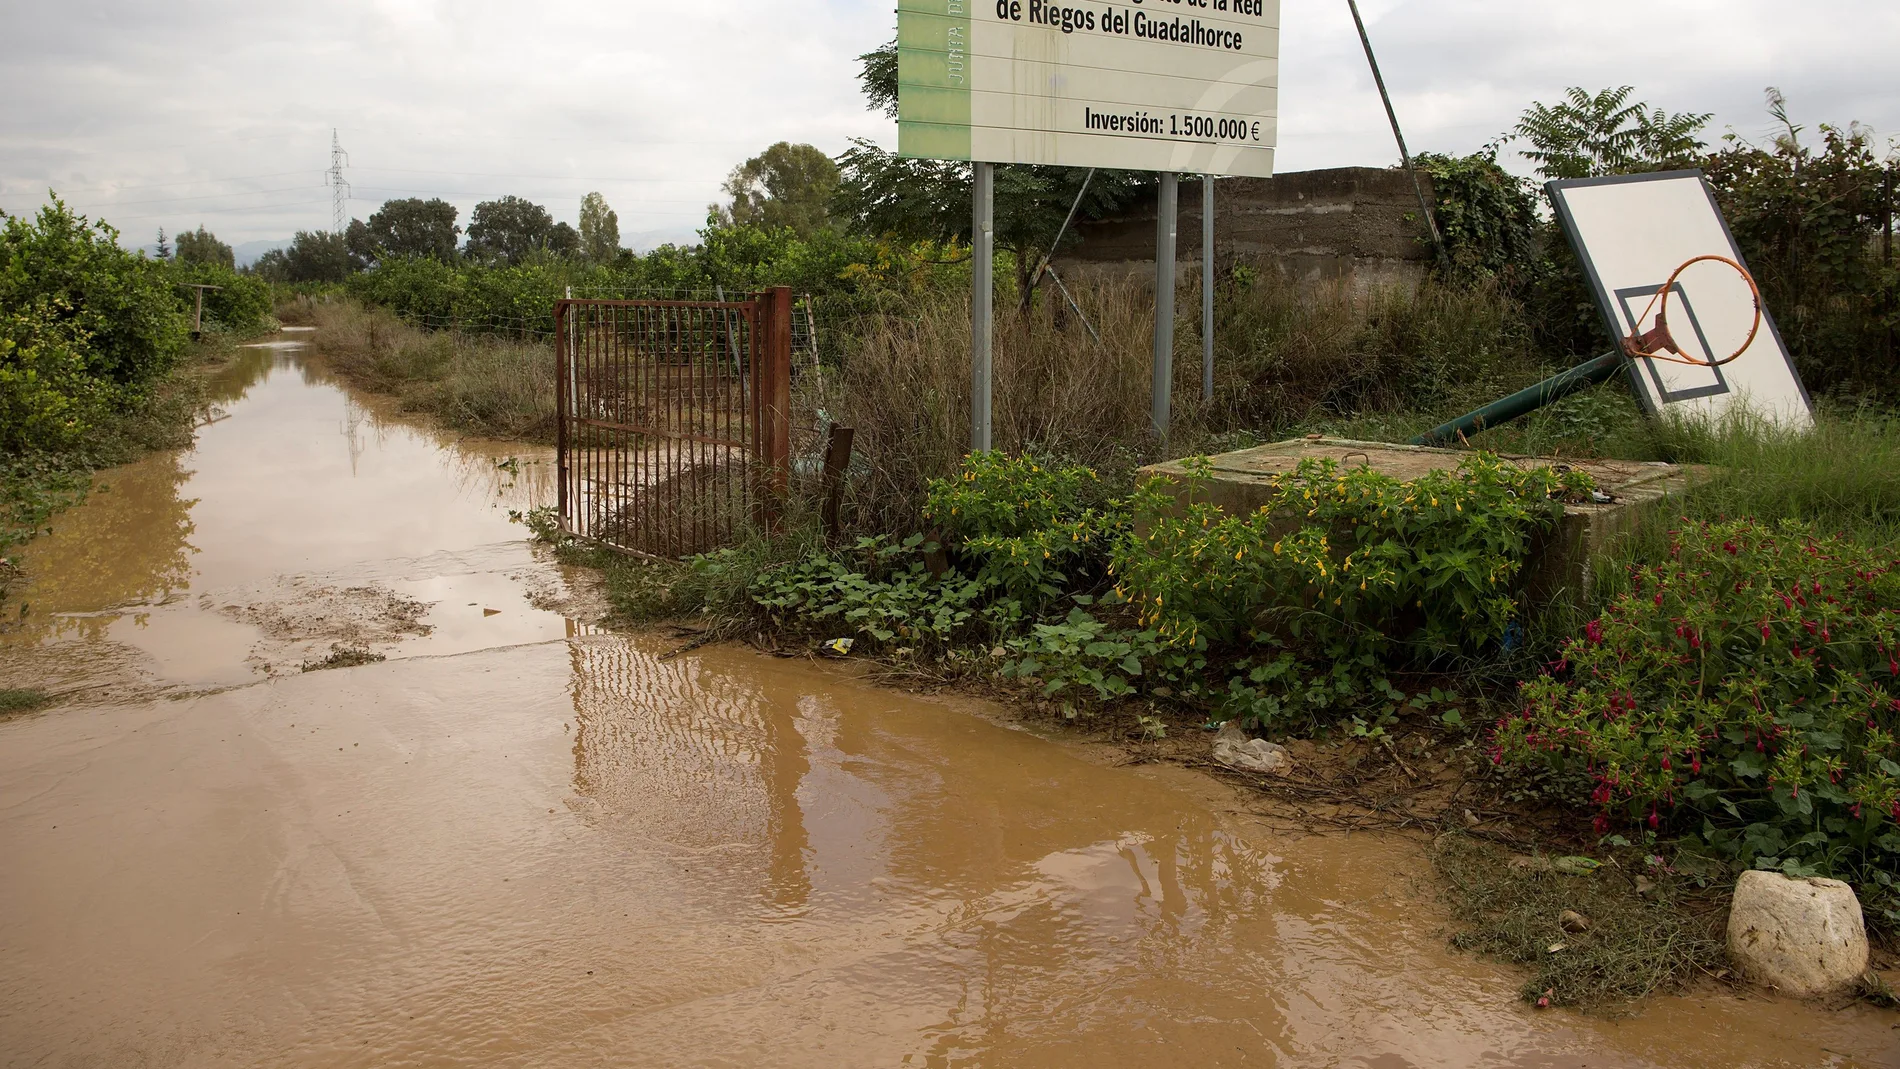  Vista de un campo de cultivo anegado en la barriada Doña Ana de la localidad malagueña de Cártama, tras las lluvias torrenciales